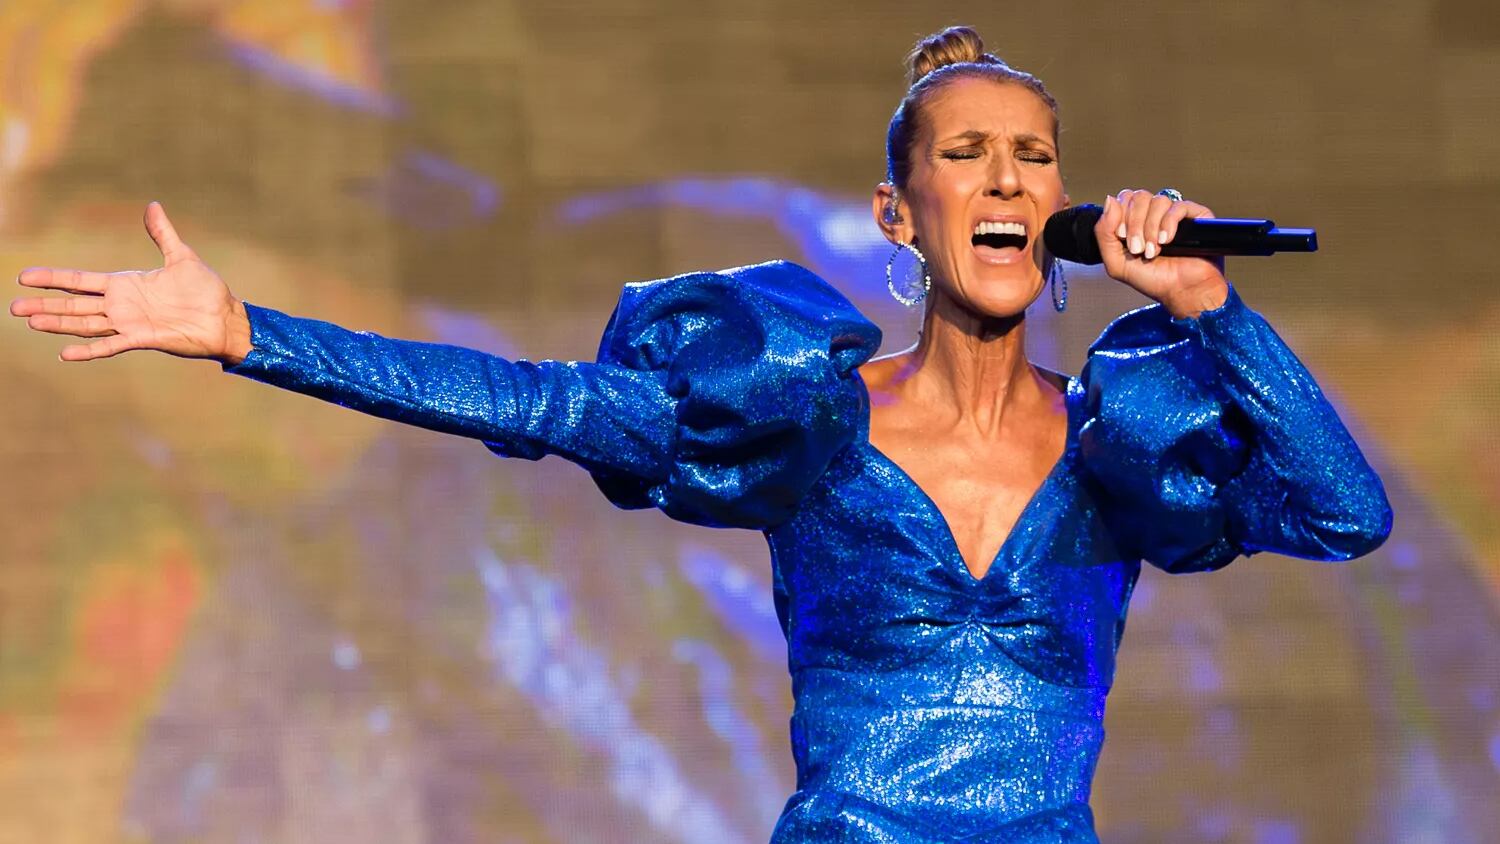 El nuevo documental de Céline Dion, 'I Am: Céline Dion', relatará la carrera profesional de la cantante y su lucha contra el raro trastorno neurológico autoinmune, el síndrome de la persona rígida (SPS, por sus siglas en inglés), diagnosticado en 2022.